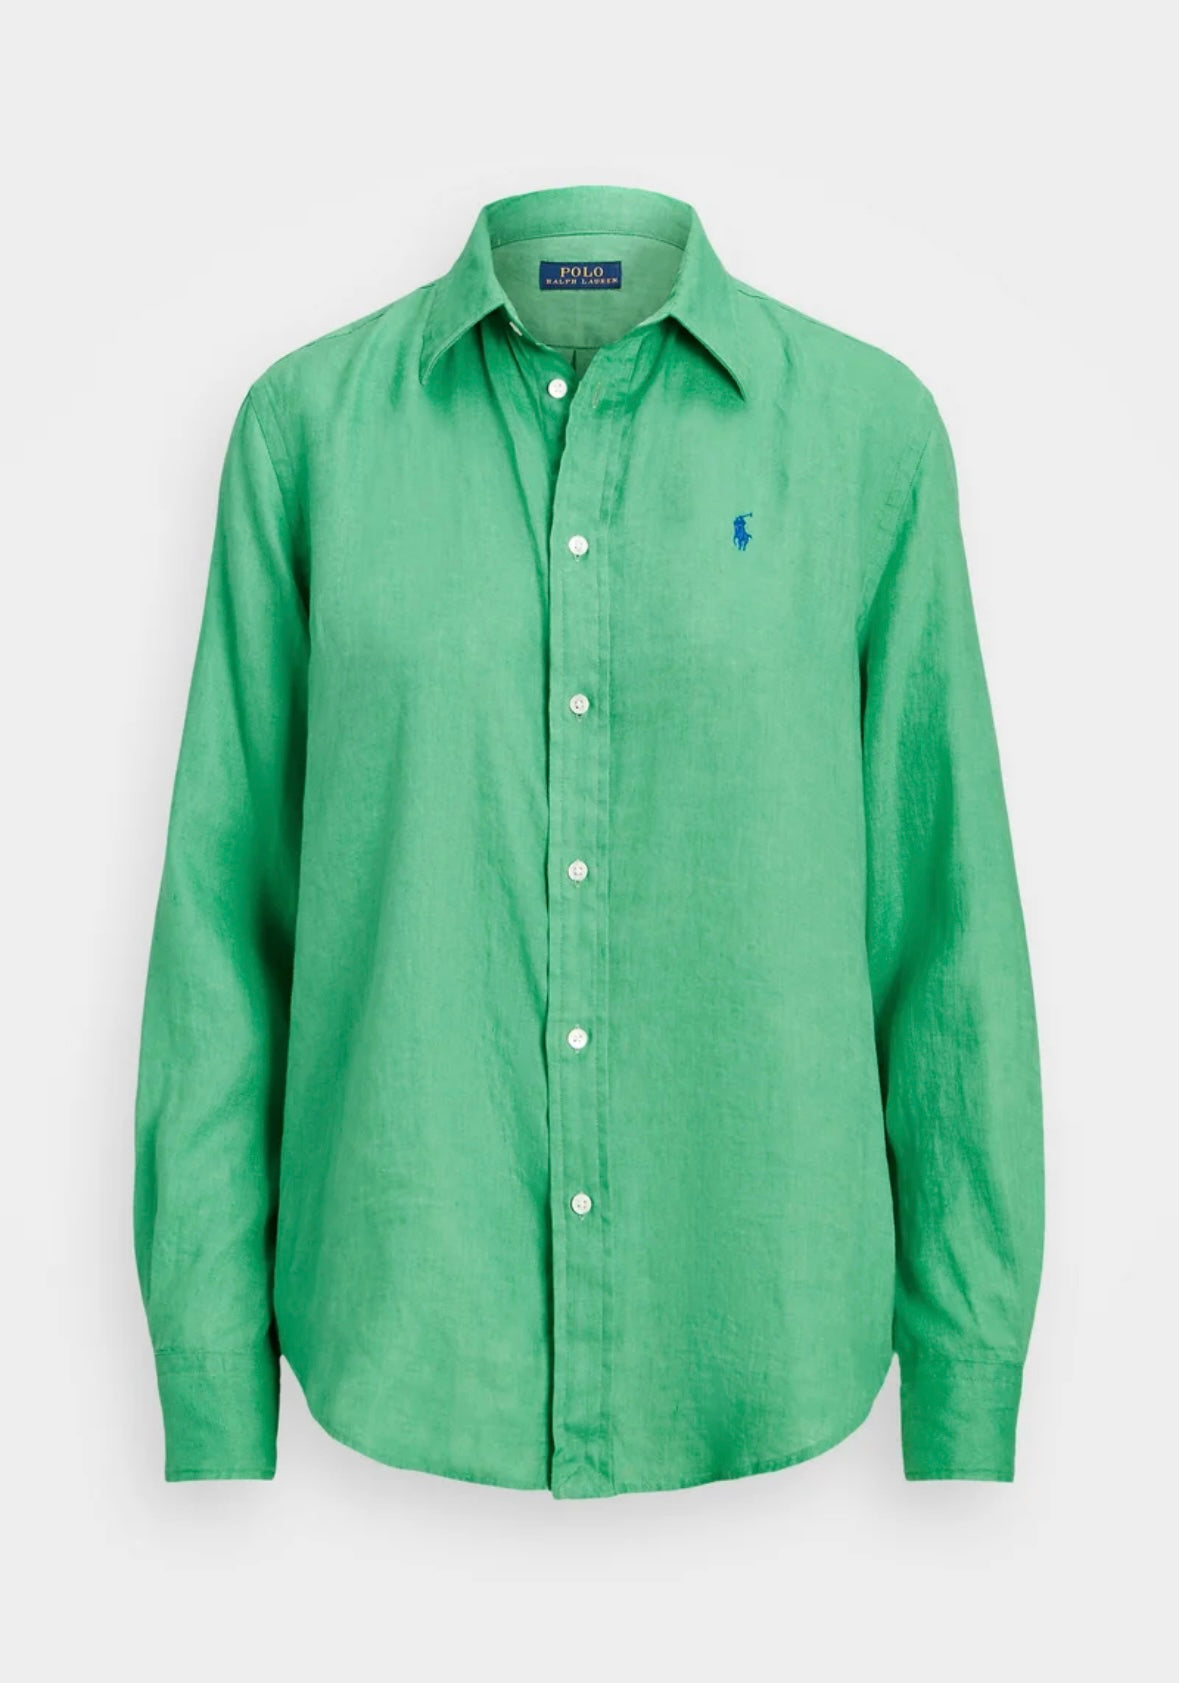 Polo Ralph Lauren Linen shirt - Vineyard Green